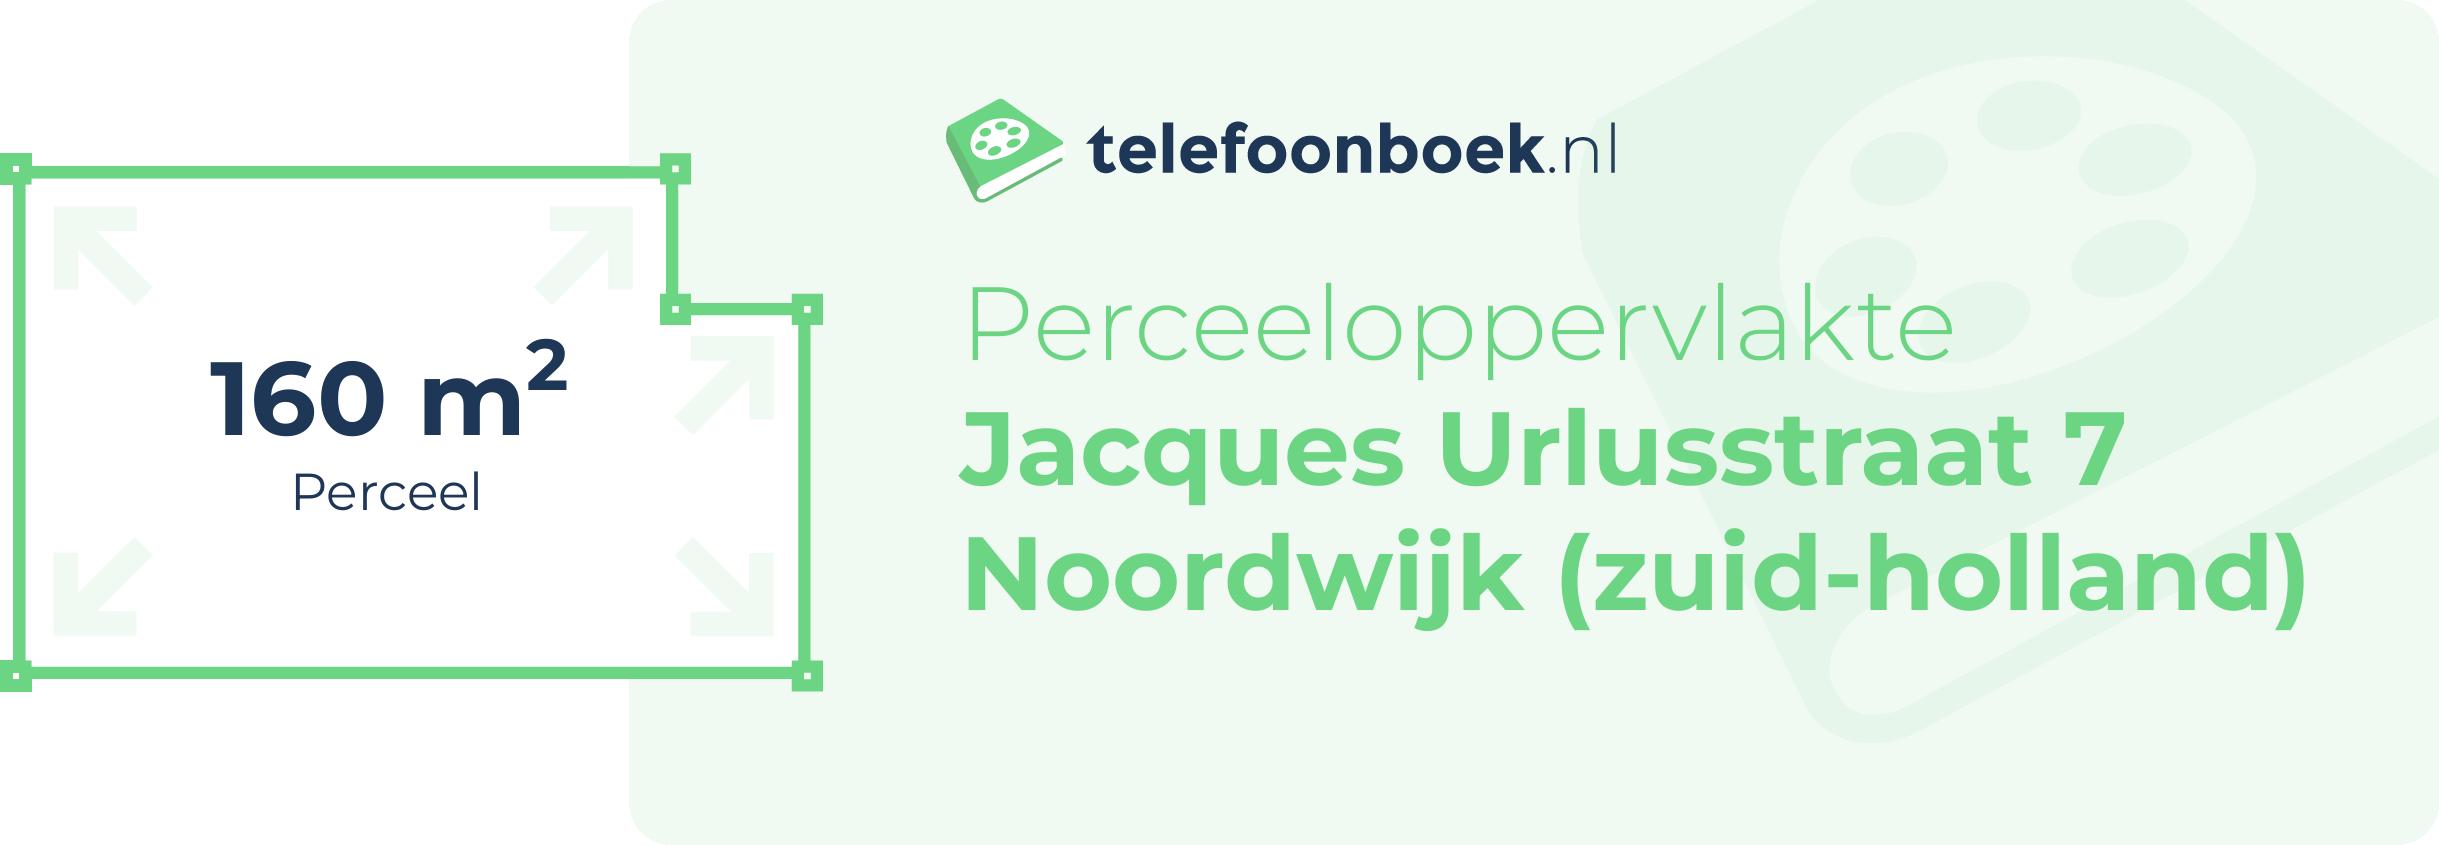 Perceeloppervlakte Jacques Urlusstraat 7 Noordwijk (Zuid-Holland)